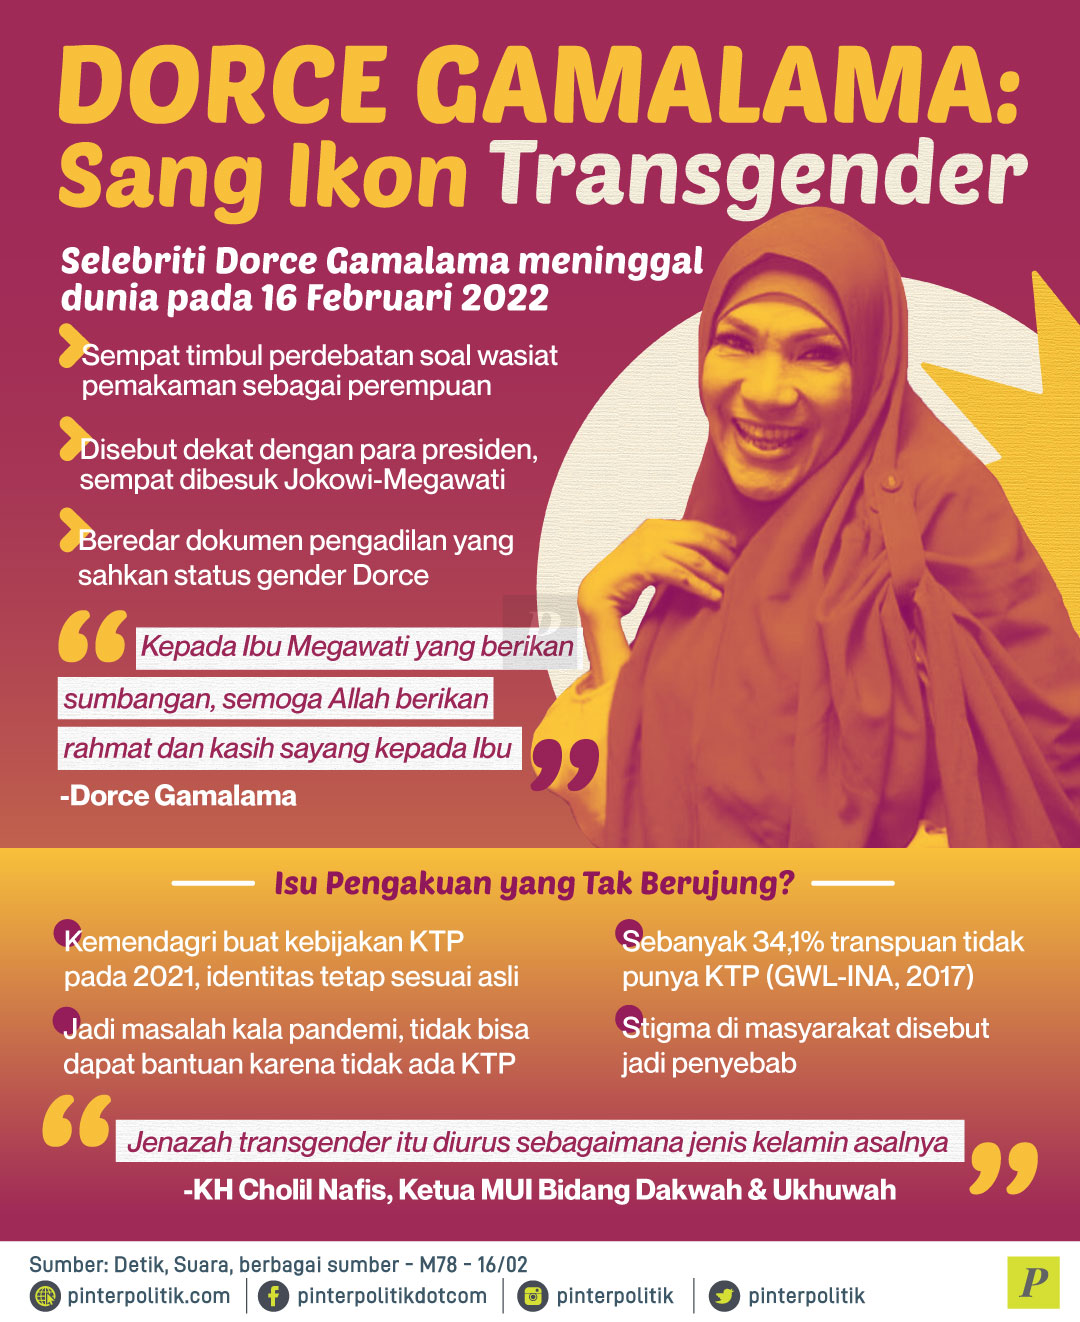 Dorce transgender